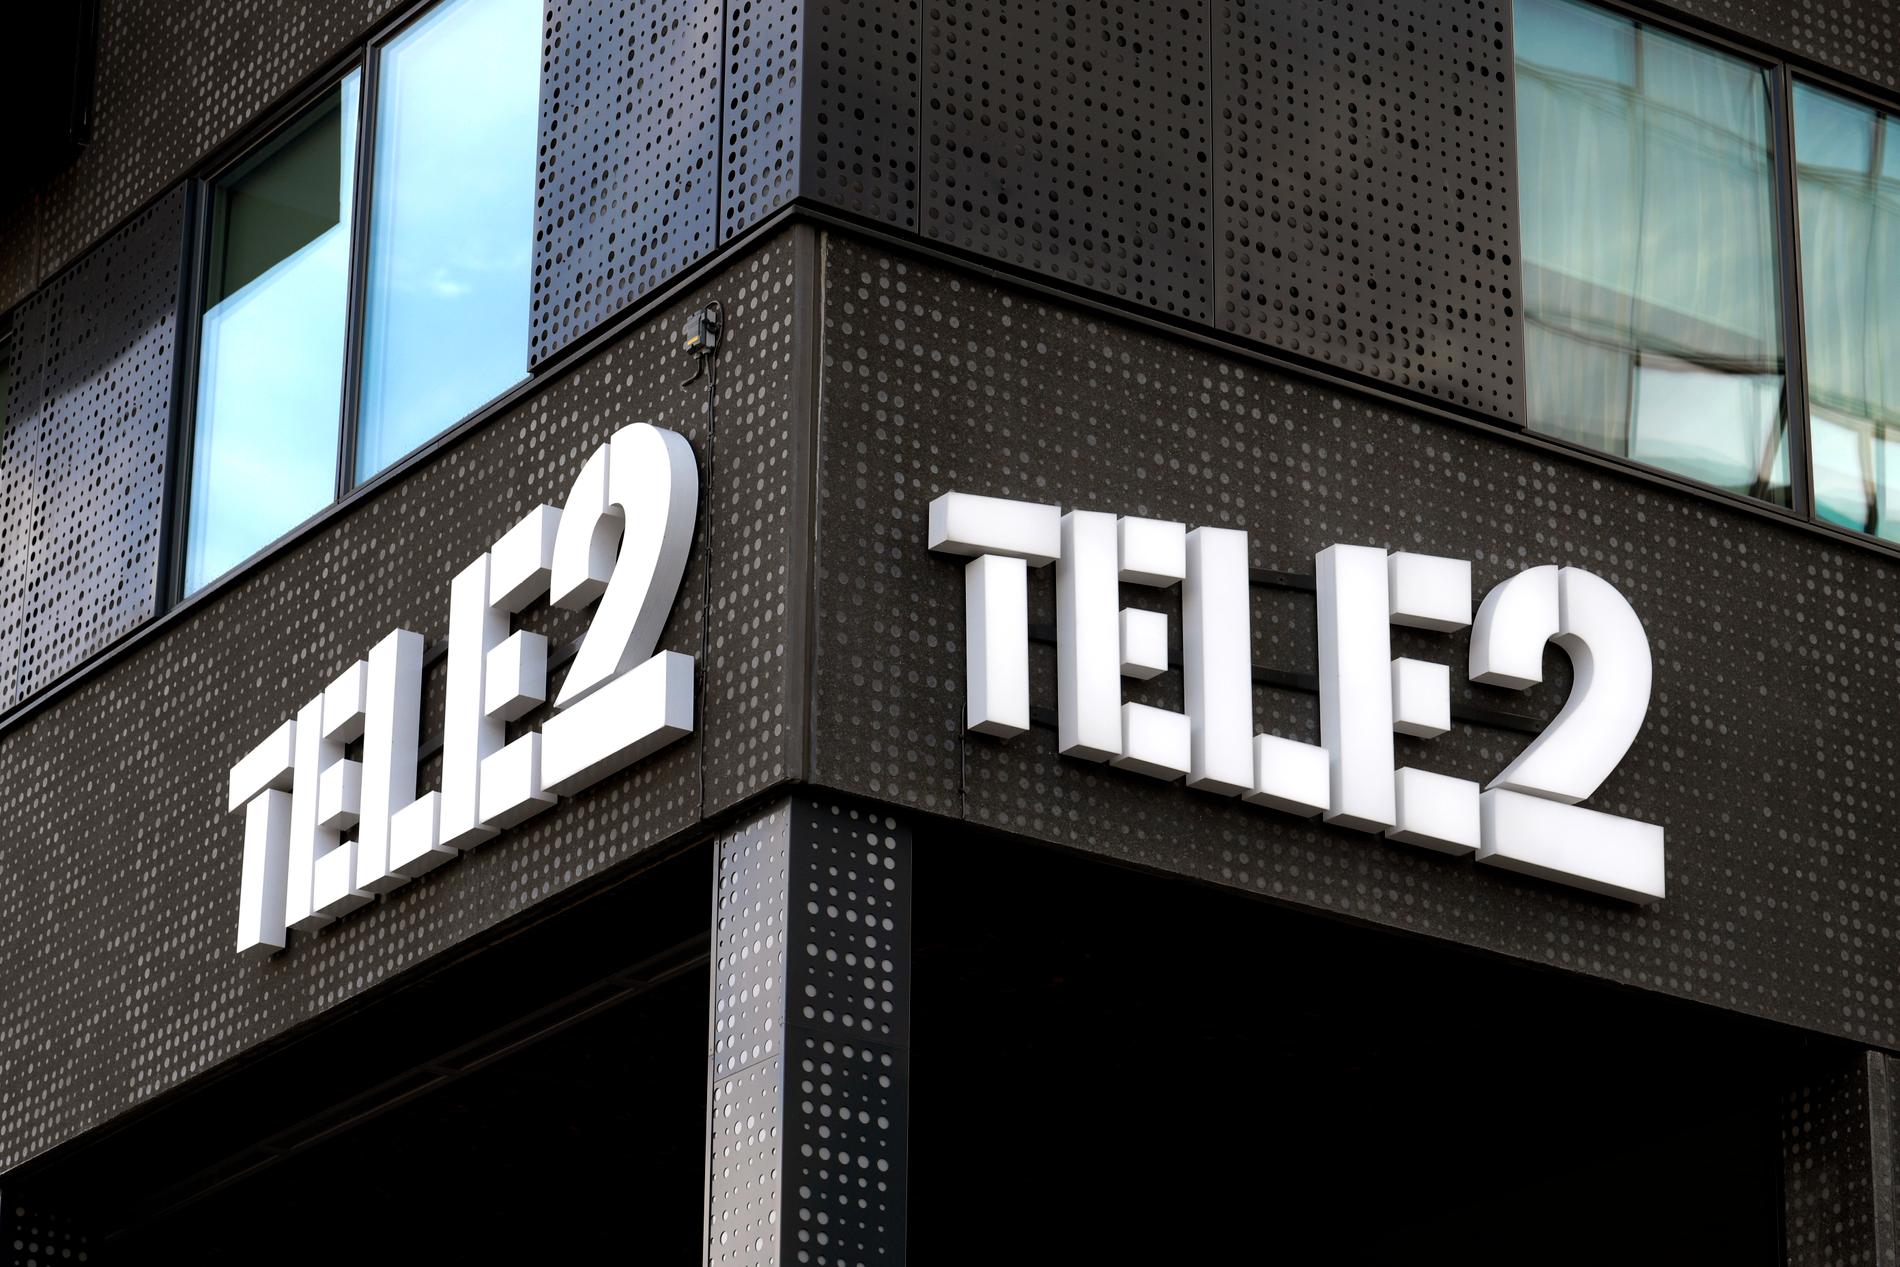 Tele2:s system för mobilsvar har haft stora säkerhetsbrister. Arkivbild.